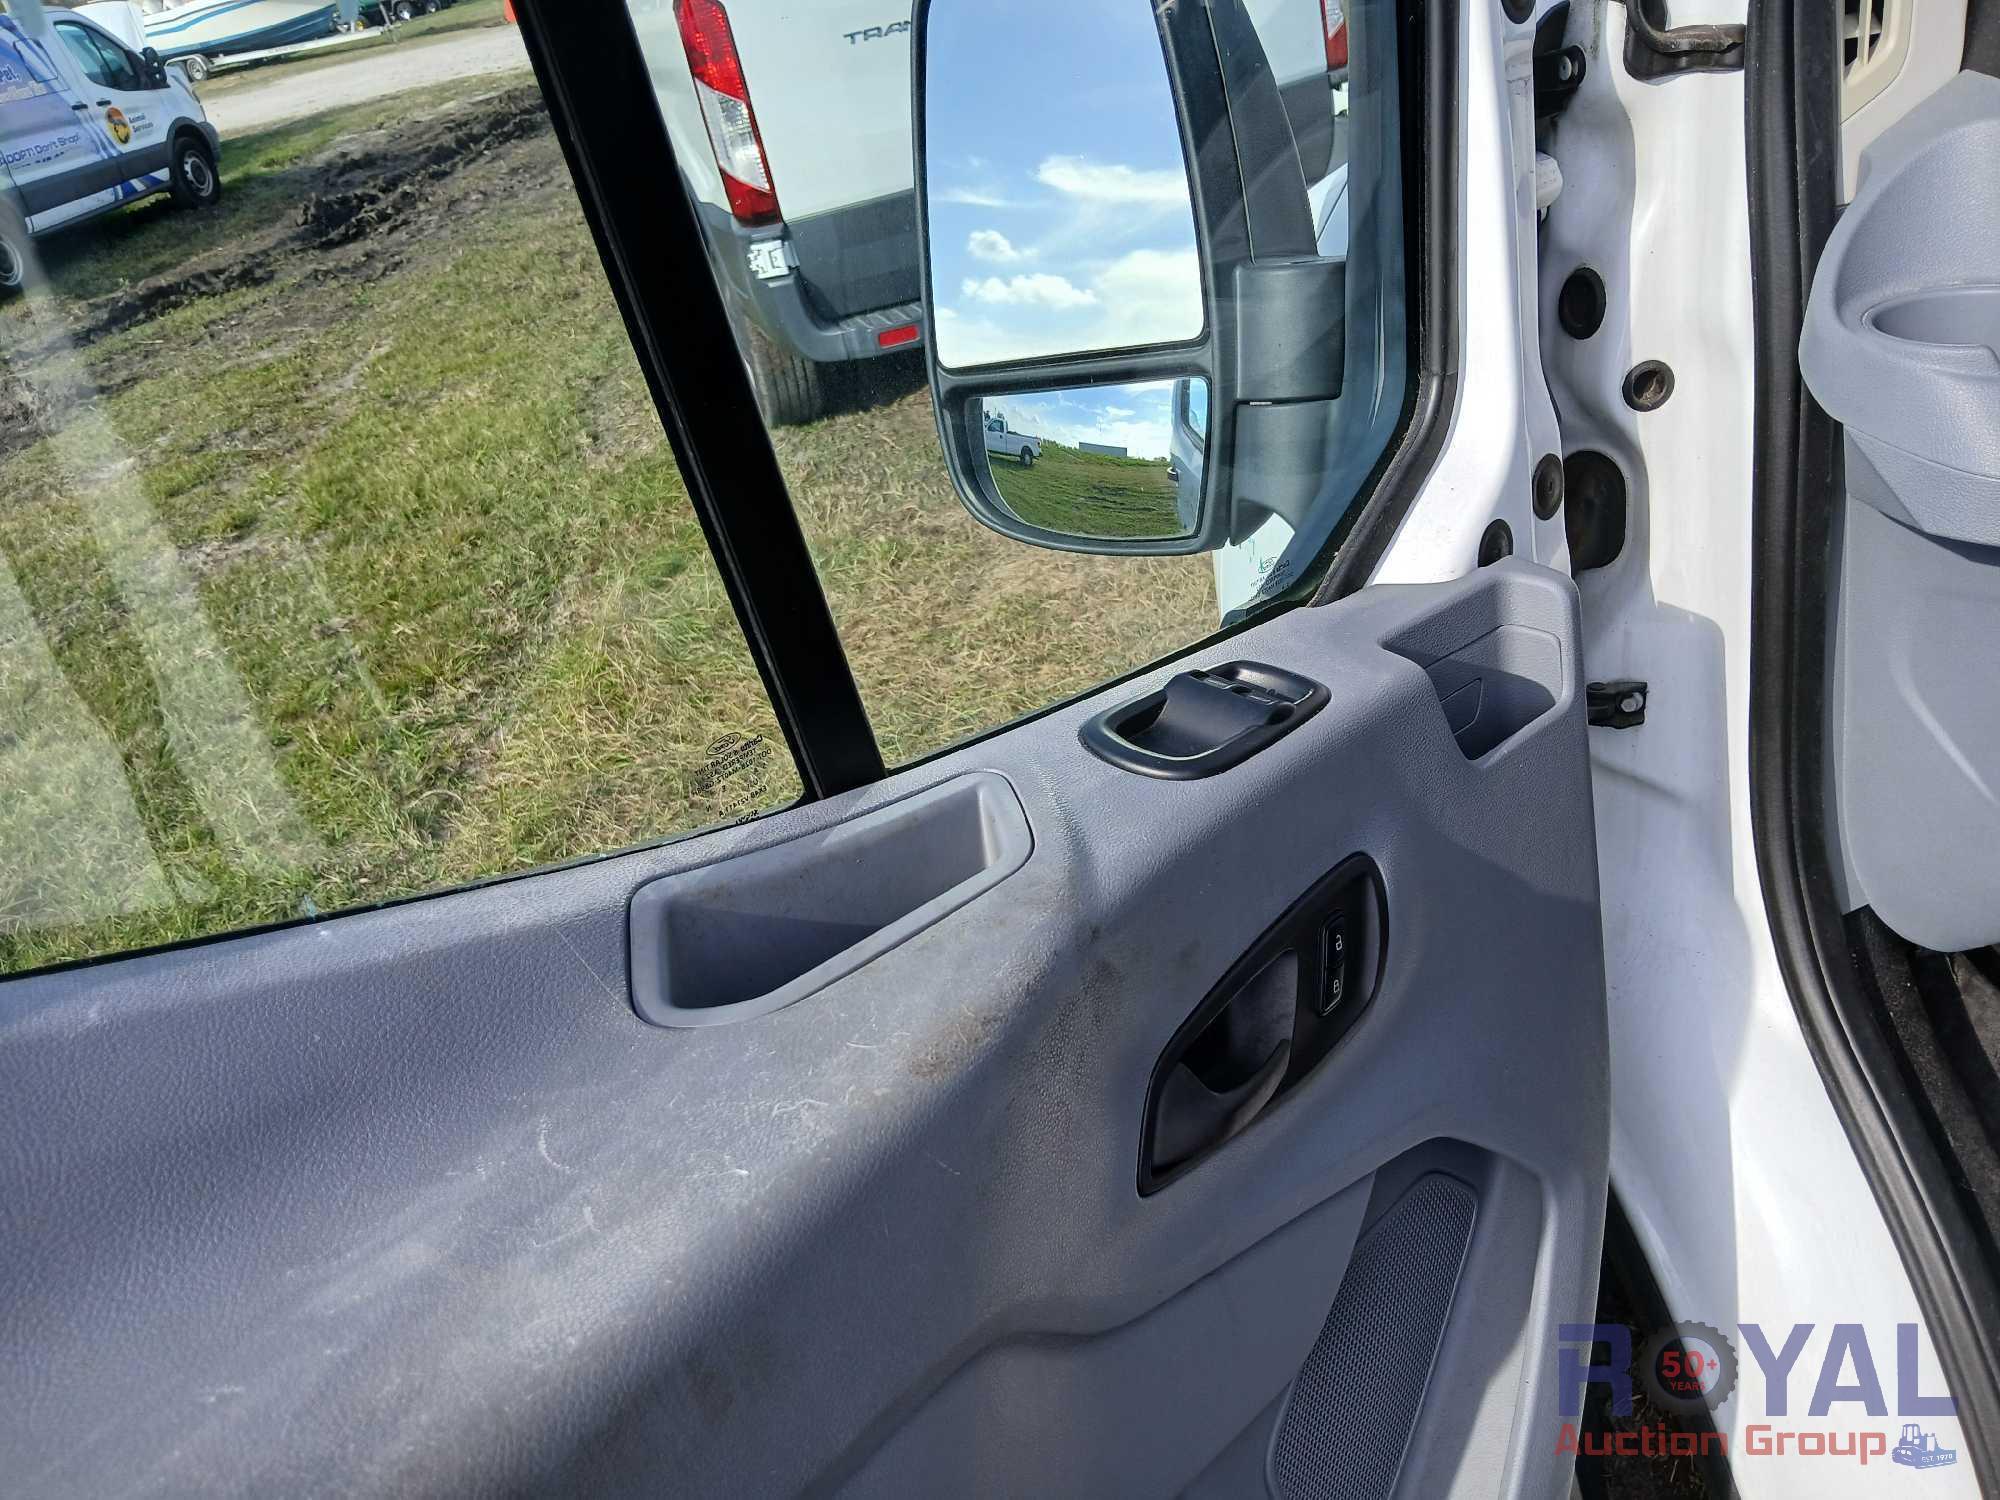 2016 Ford Transit 250 Cargo Van